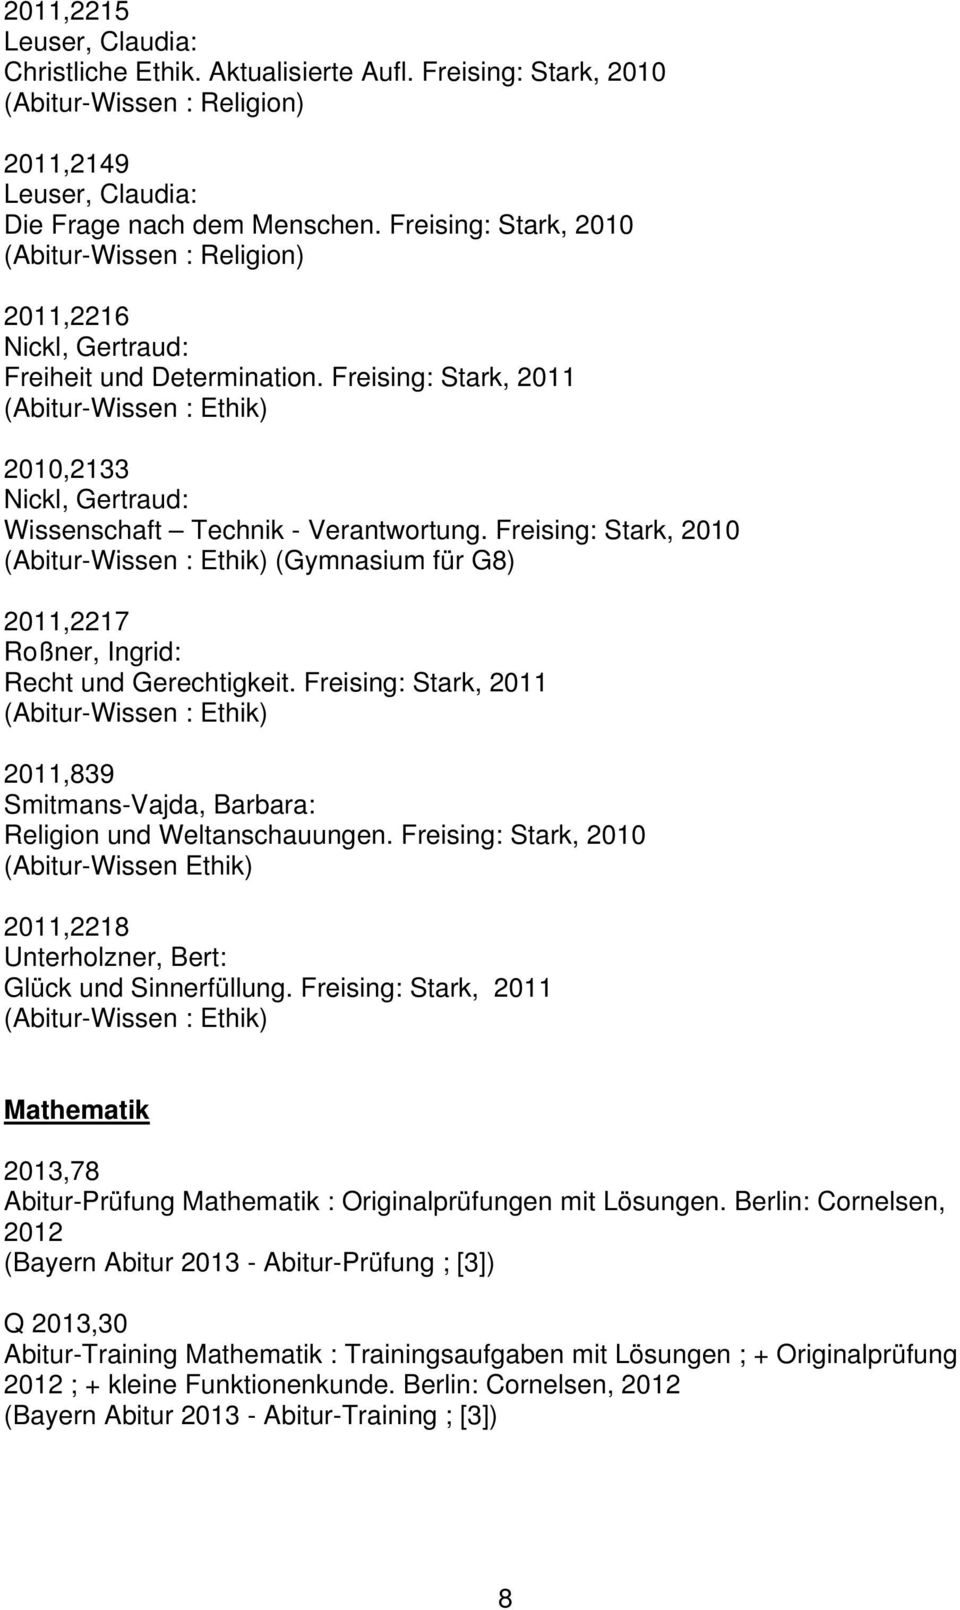 Mathematik Bayern 11 STARK Abitur-Training FOS/BOS Band 1 und 12 2 STARK-Verlag - Training Klasse Nichttechnik